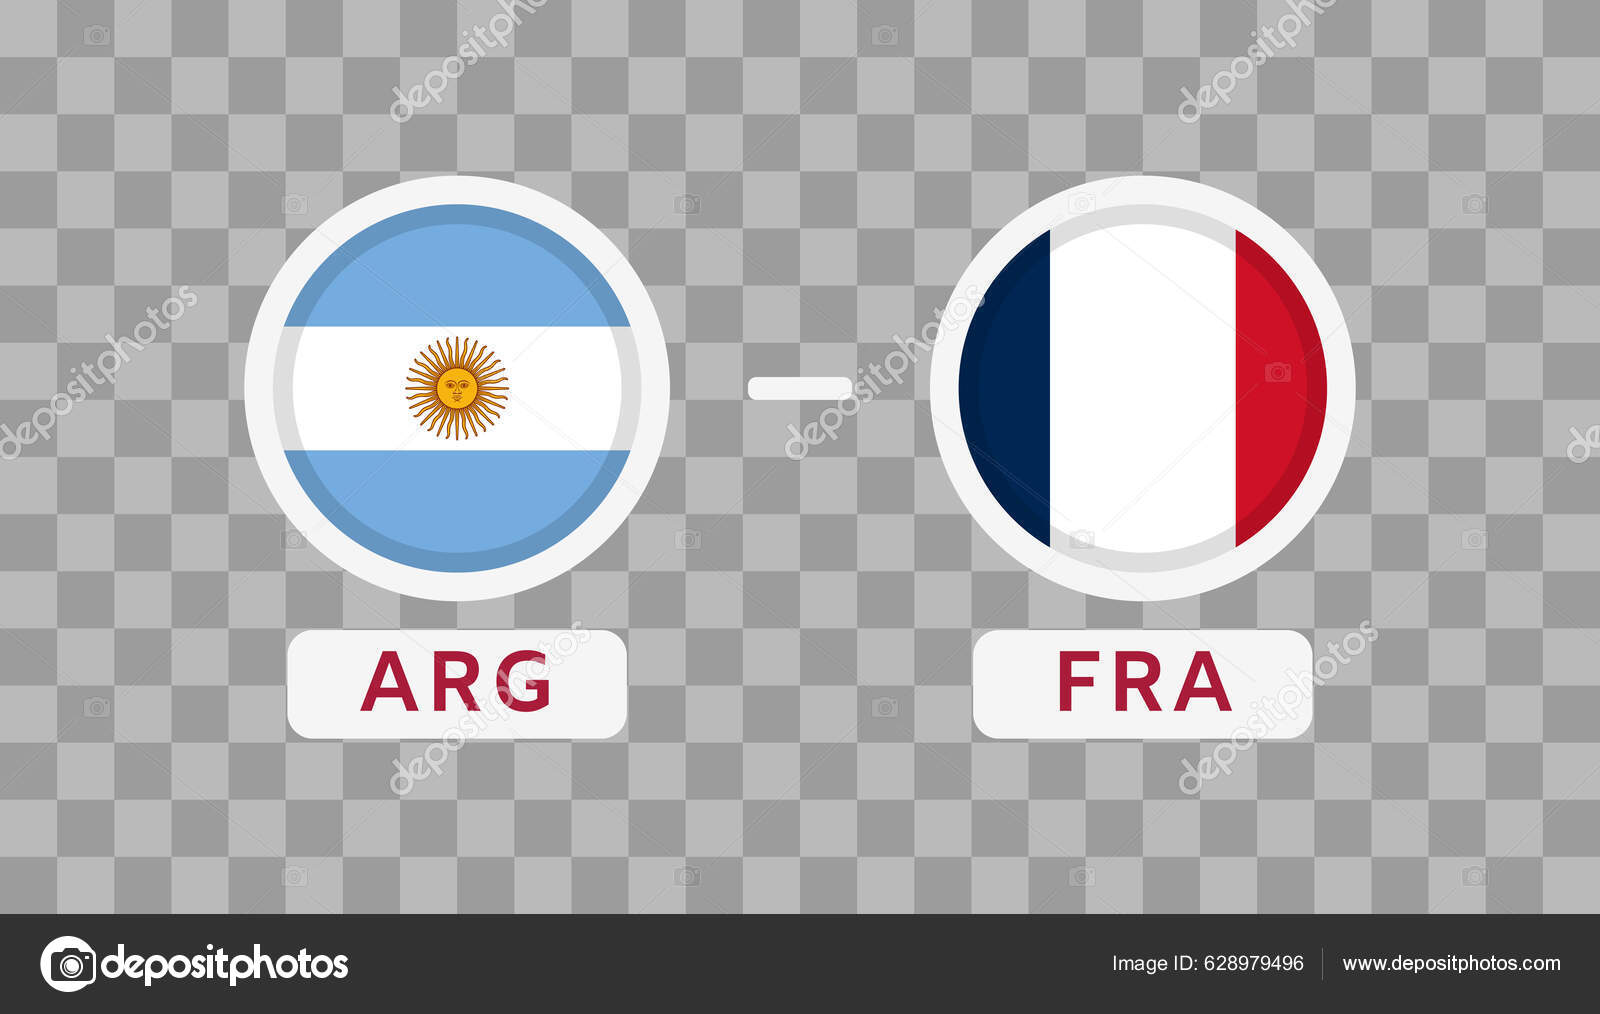 Modelo de dia de jogo de futebol argentina vs brasil modelo de dia de jogo